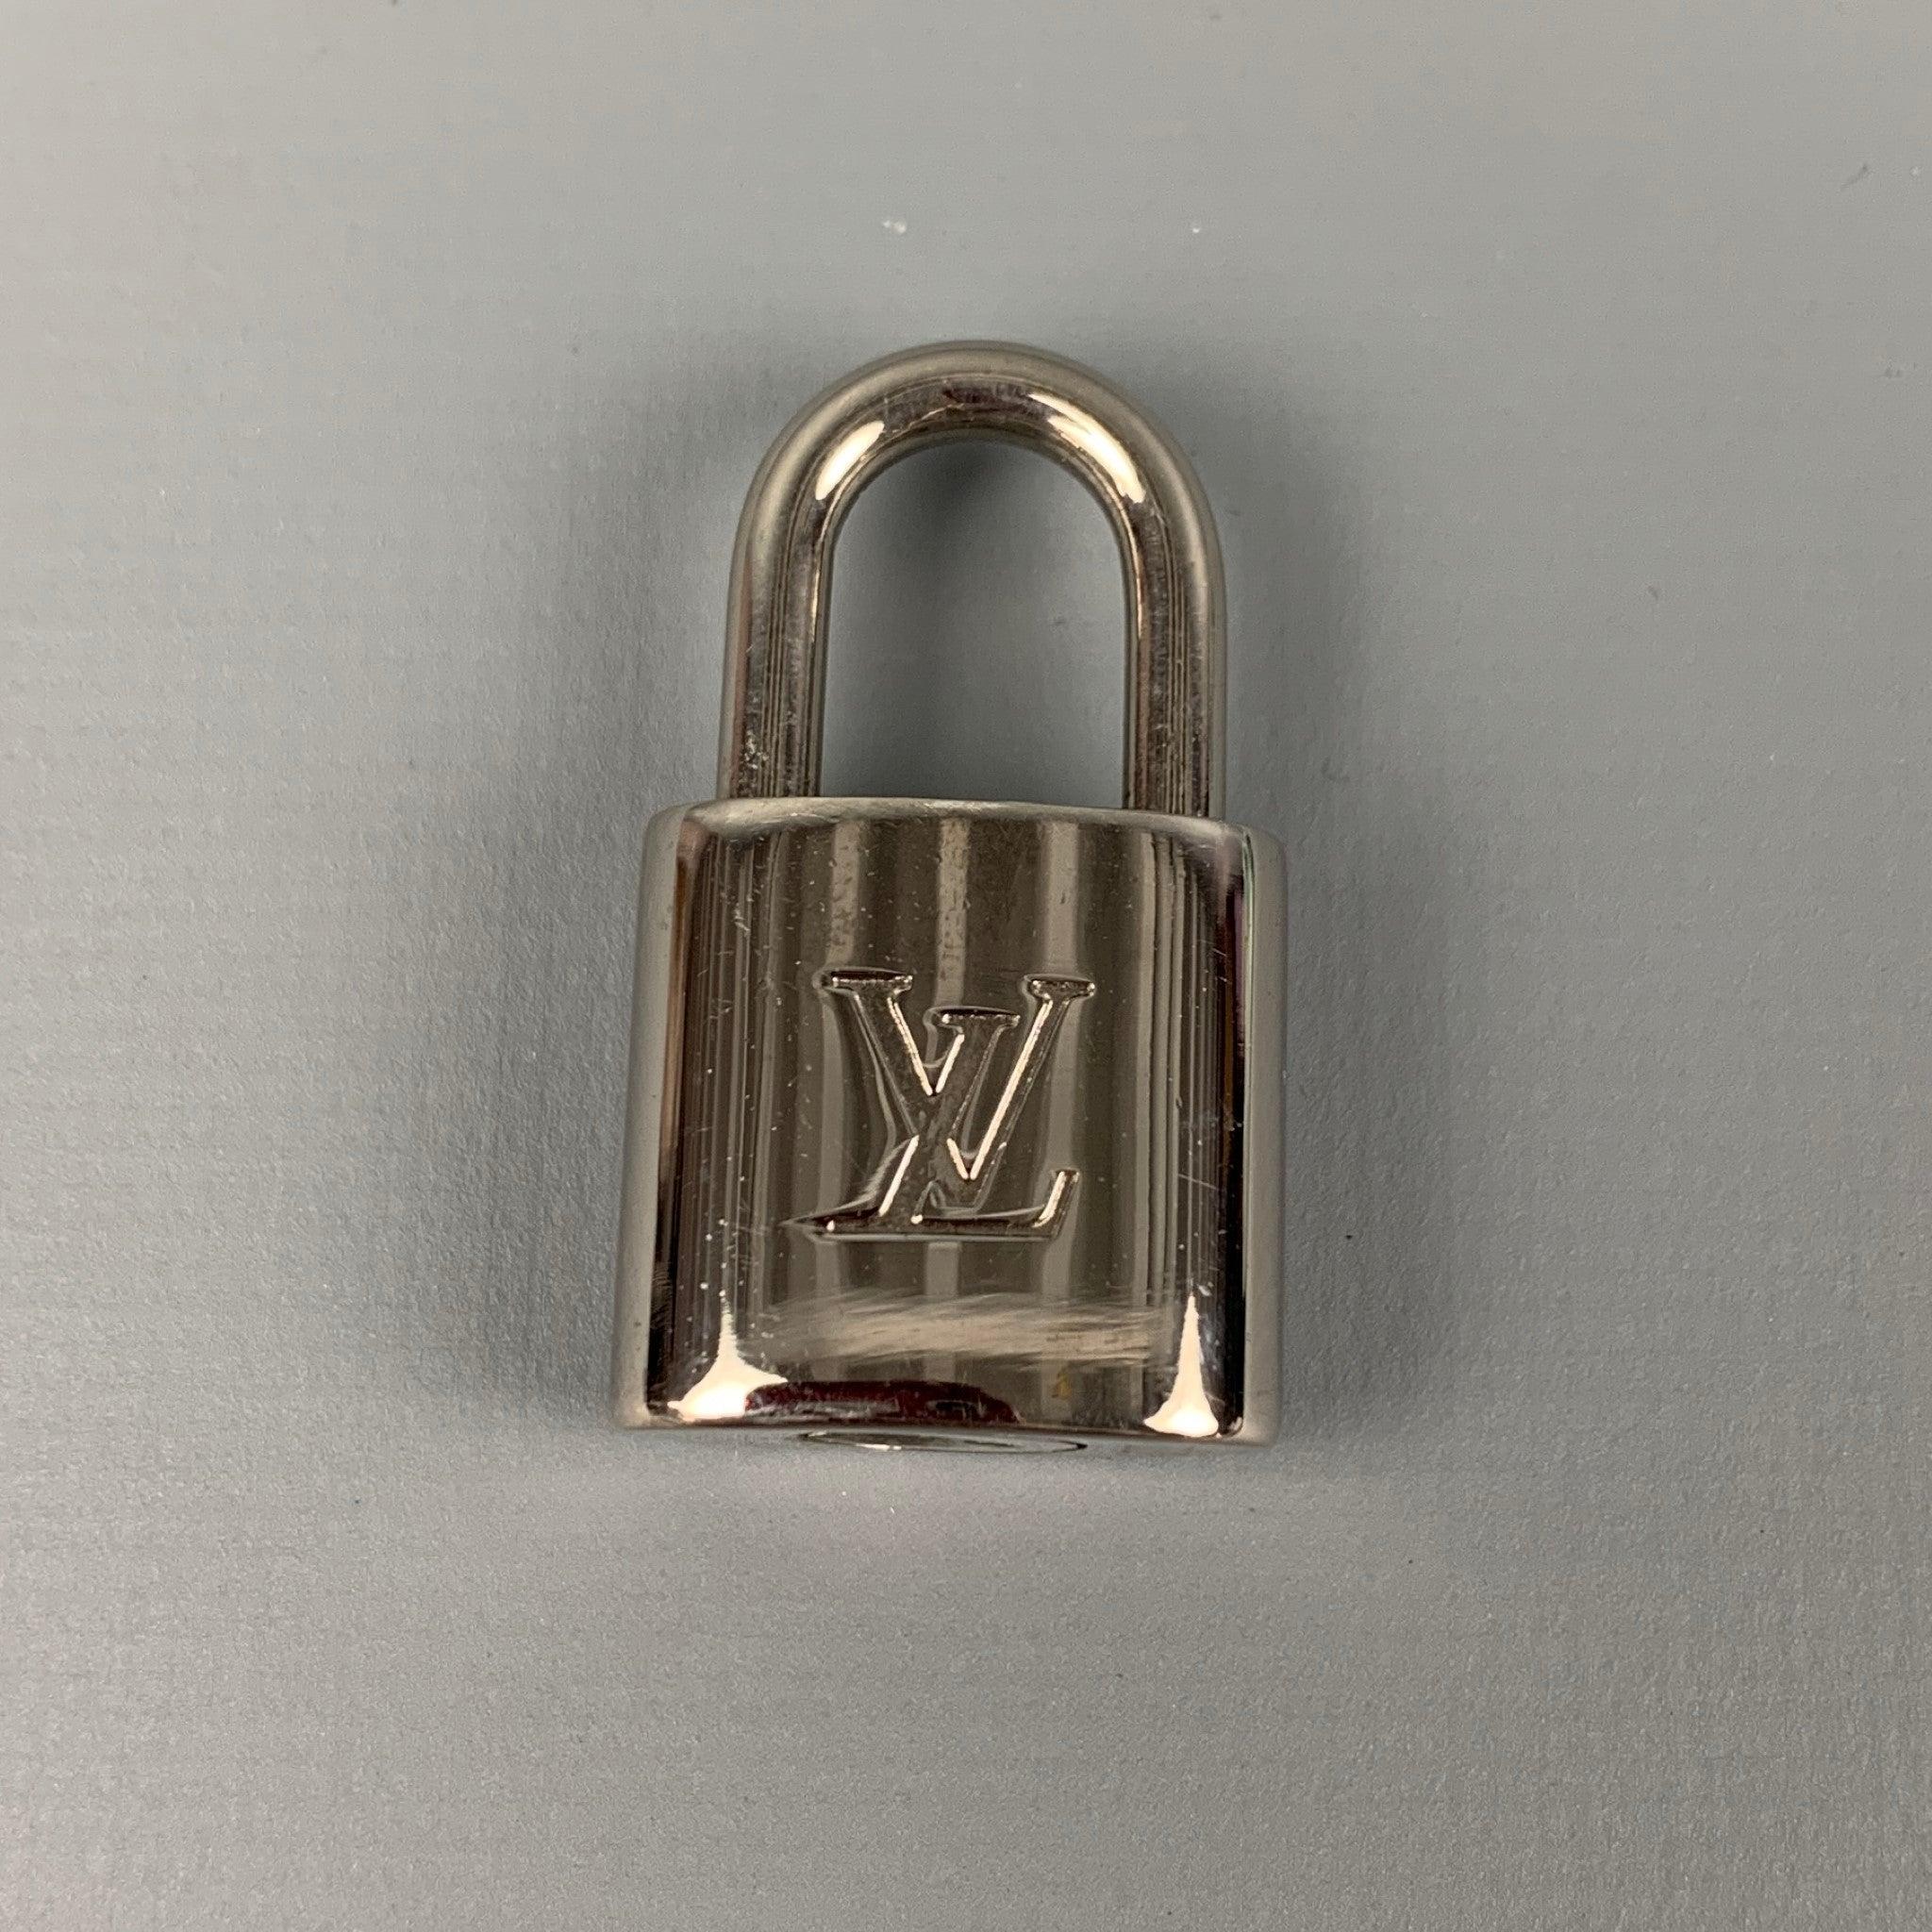 LOUIS VUITTON '303' Vorhängeschloss und Schlüssel aus silberfarbenem Metall mit eingraviertem Logo. Inklusive Box.
Sehr guter gebrauchter Zustand. 

Markiert:   303Maße:Länge: 0,75 Zoll Höhe: 1,5 Zoll 
  
  
 
Referenz: 118835
Kategorie: Taschen &